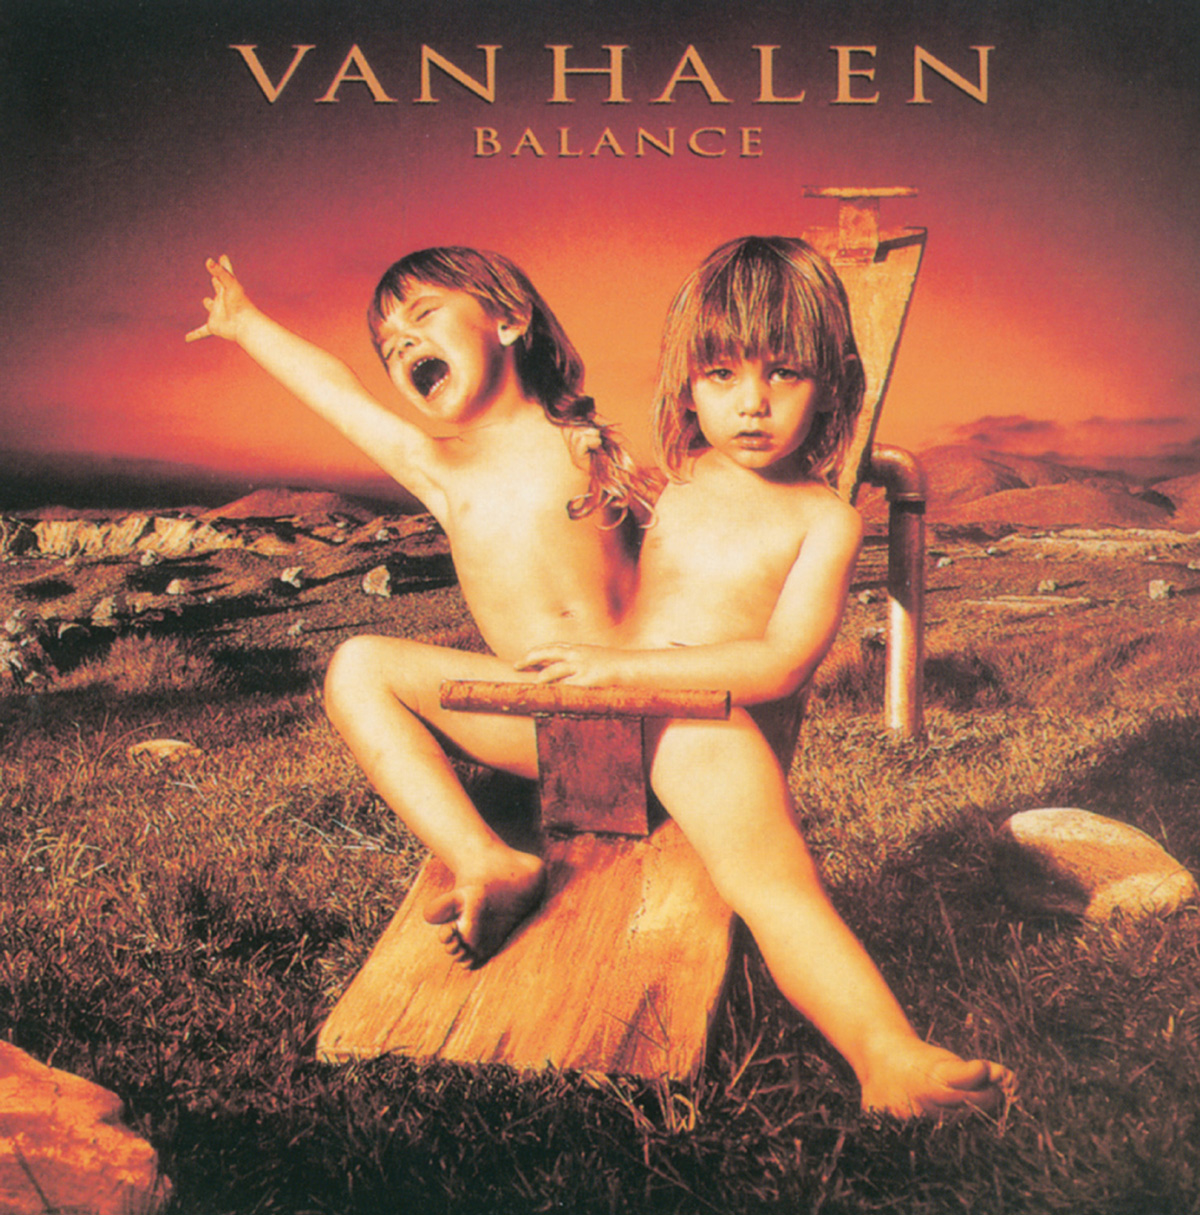 Artist Glen Wexler's album cover for Van Halen’s 